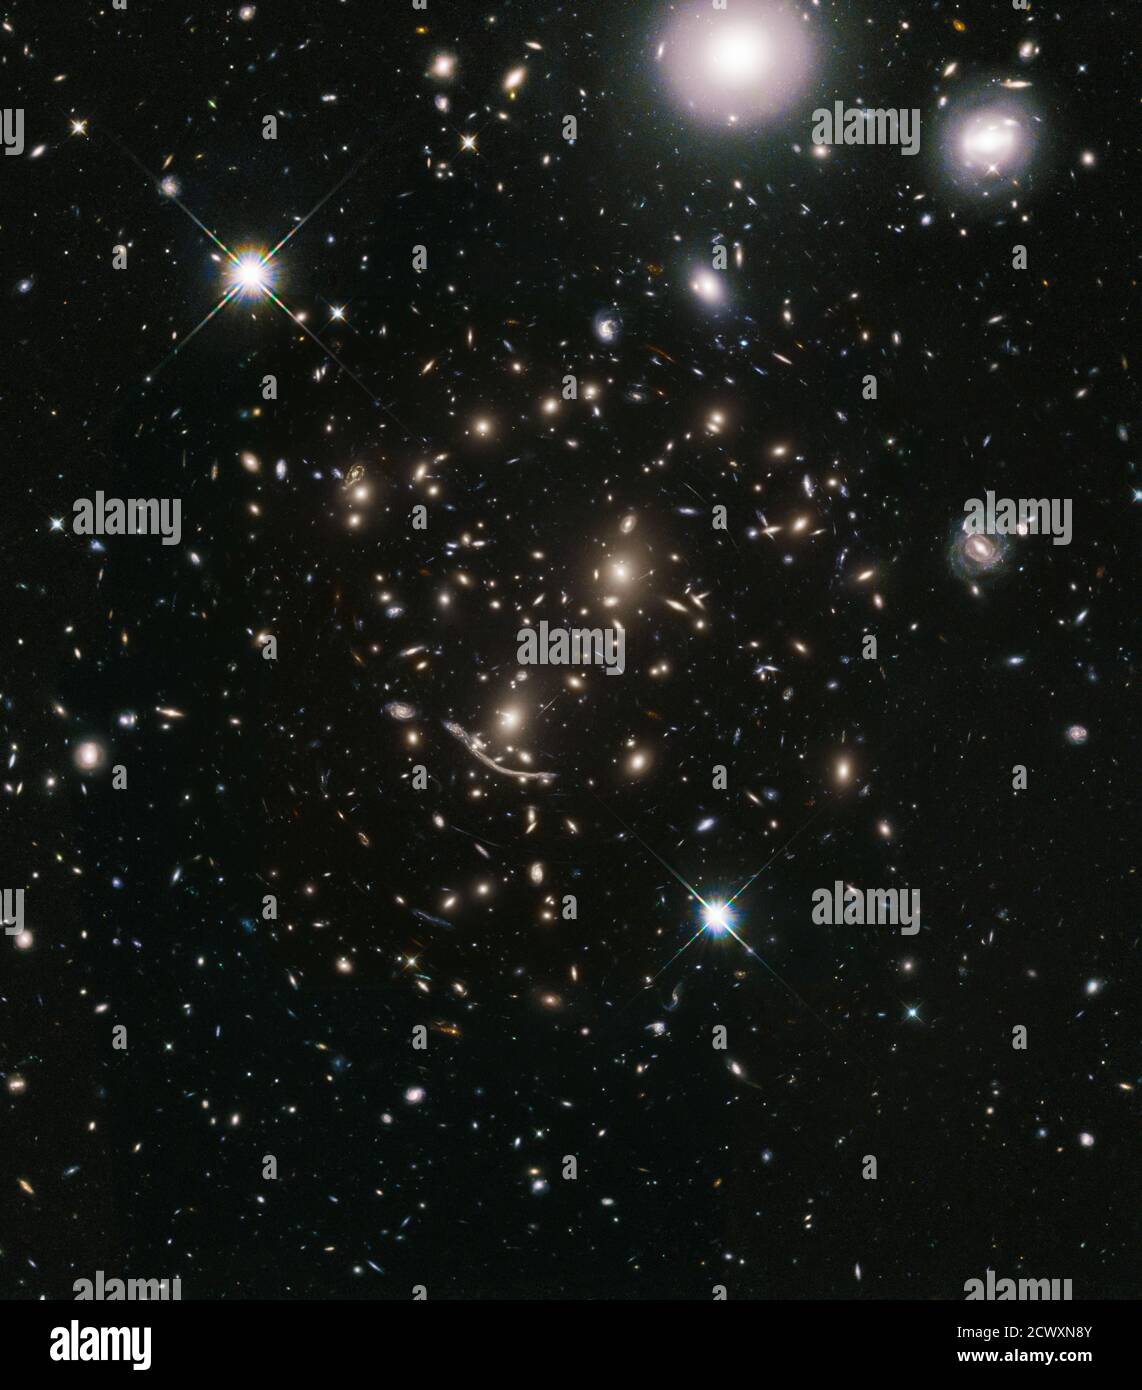 Hubble va largo per cercare lontano-flung Galassie l'universo è un grande posto. Le viste del telescopio spaziale Hubble scurono in profondità nello spazio e nel tempo, ma coprono un'area una frazione delle dimensioni angolari della Luna piena. La sfida è che questi 'campioni di nucleo' del cielo non possono rappresentare completamente l'universo in generale. Questo dilemma per i cosmologi è chiamato varianza cosmica. Espandendo l'area di rilevamento, tali incertezze nella struttura dell'universo possono essere ridotte. Una nuova campagna di osservazione Hubble, chiamata Beyond Ultra-Deep Frontier Fields and Legacy Observations (BUFFALO), amplierà con coraggio la sp Foto Stock